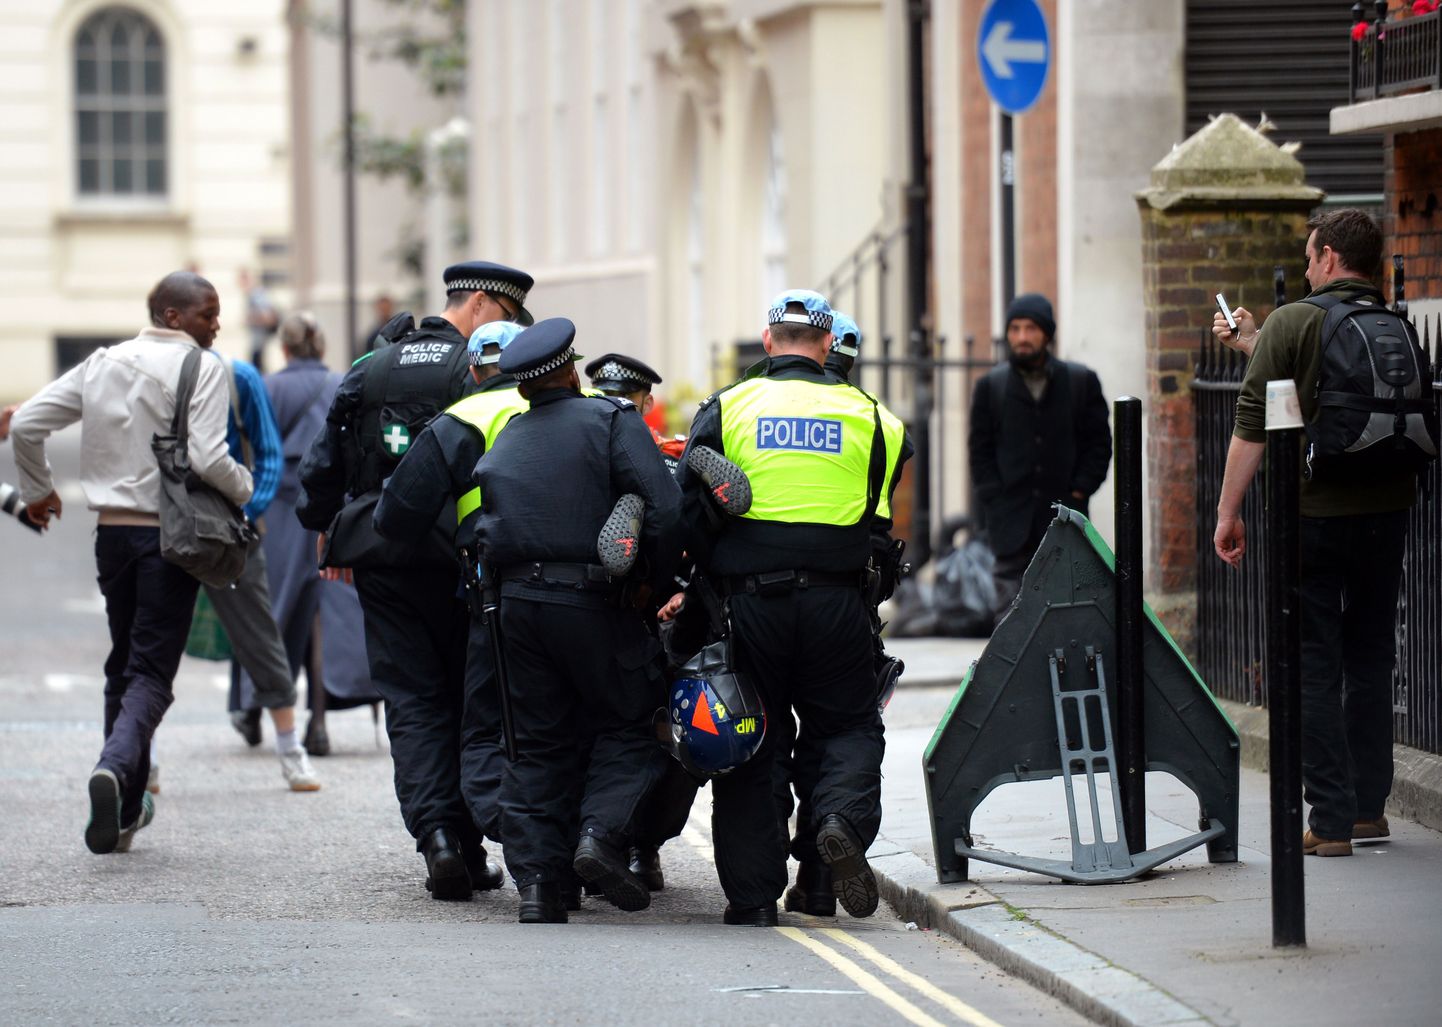 Briti politsei tööhoos. Pildil olev arreteerimine ei ole seotud konkreetse kihlveopettuste skandaaliga.